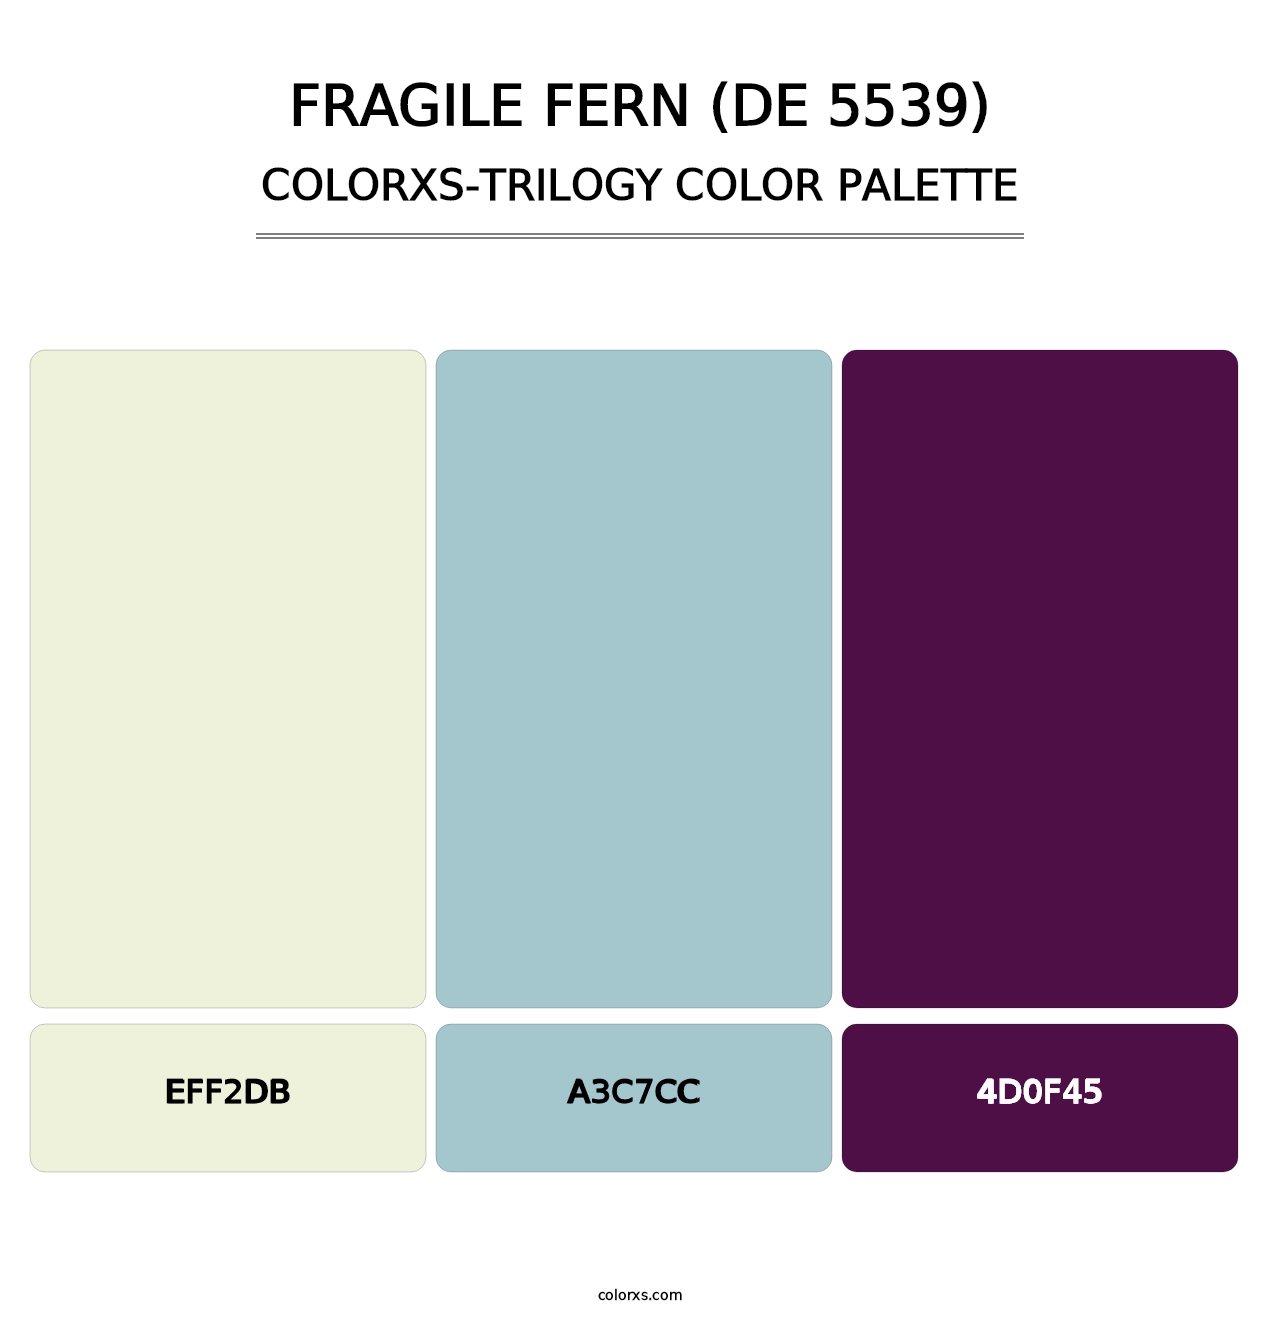 Fragile Fern (DE 5539) - Colorxs Trilogy Palette